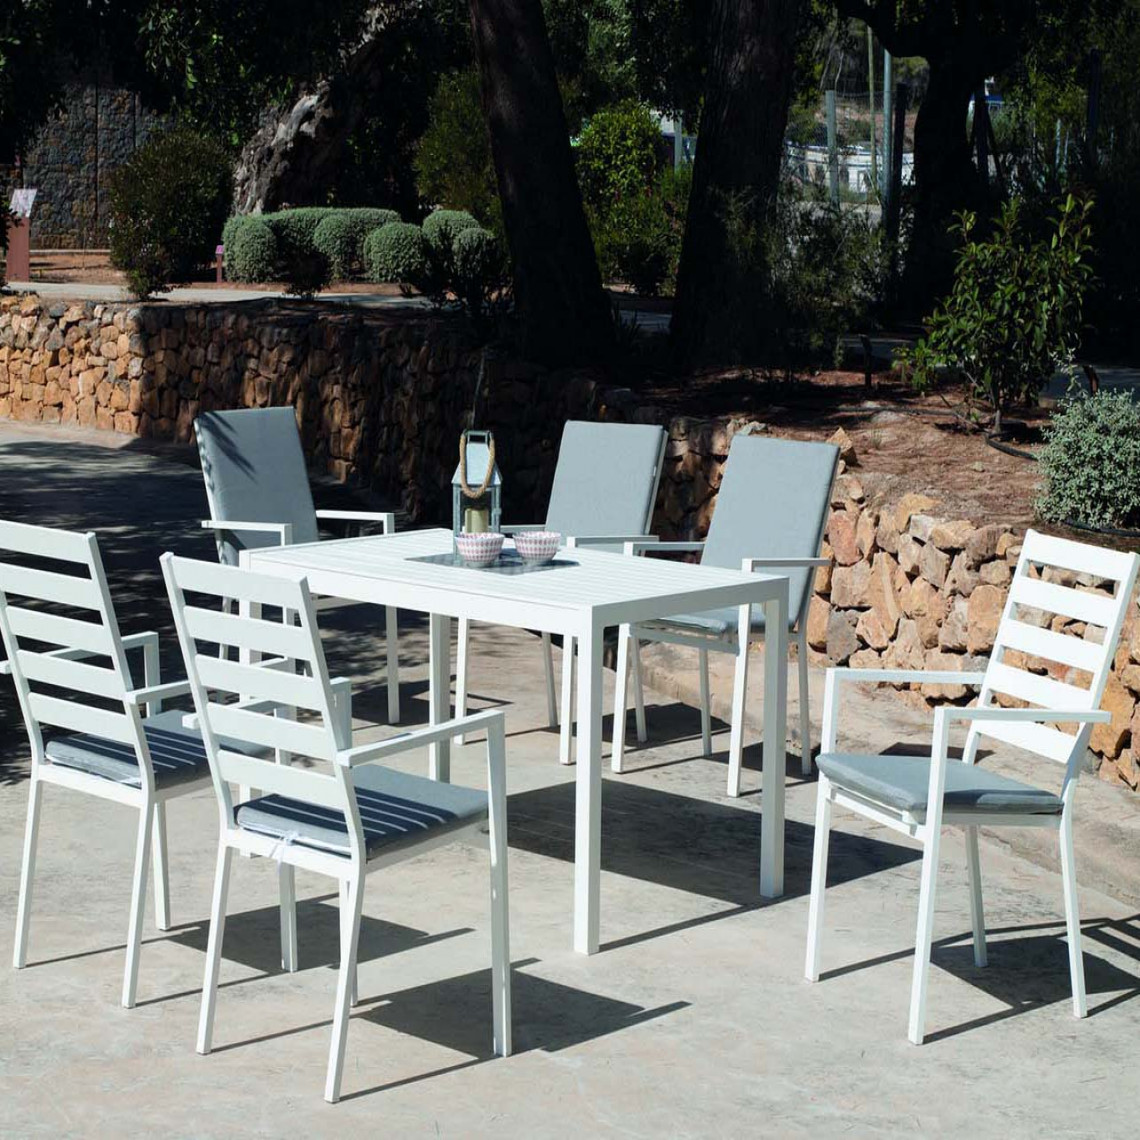 Hevea - Salon de jardin en aluminium 6 personnes Palma - Ensembles tables et chaises